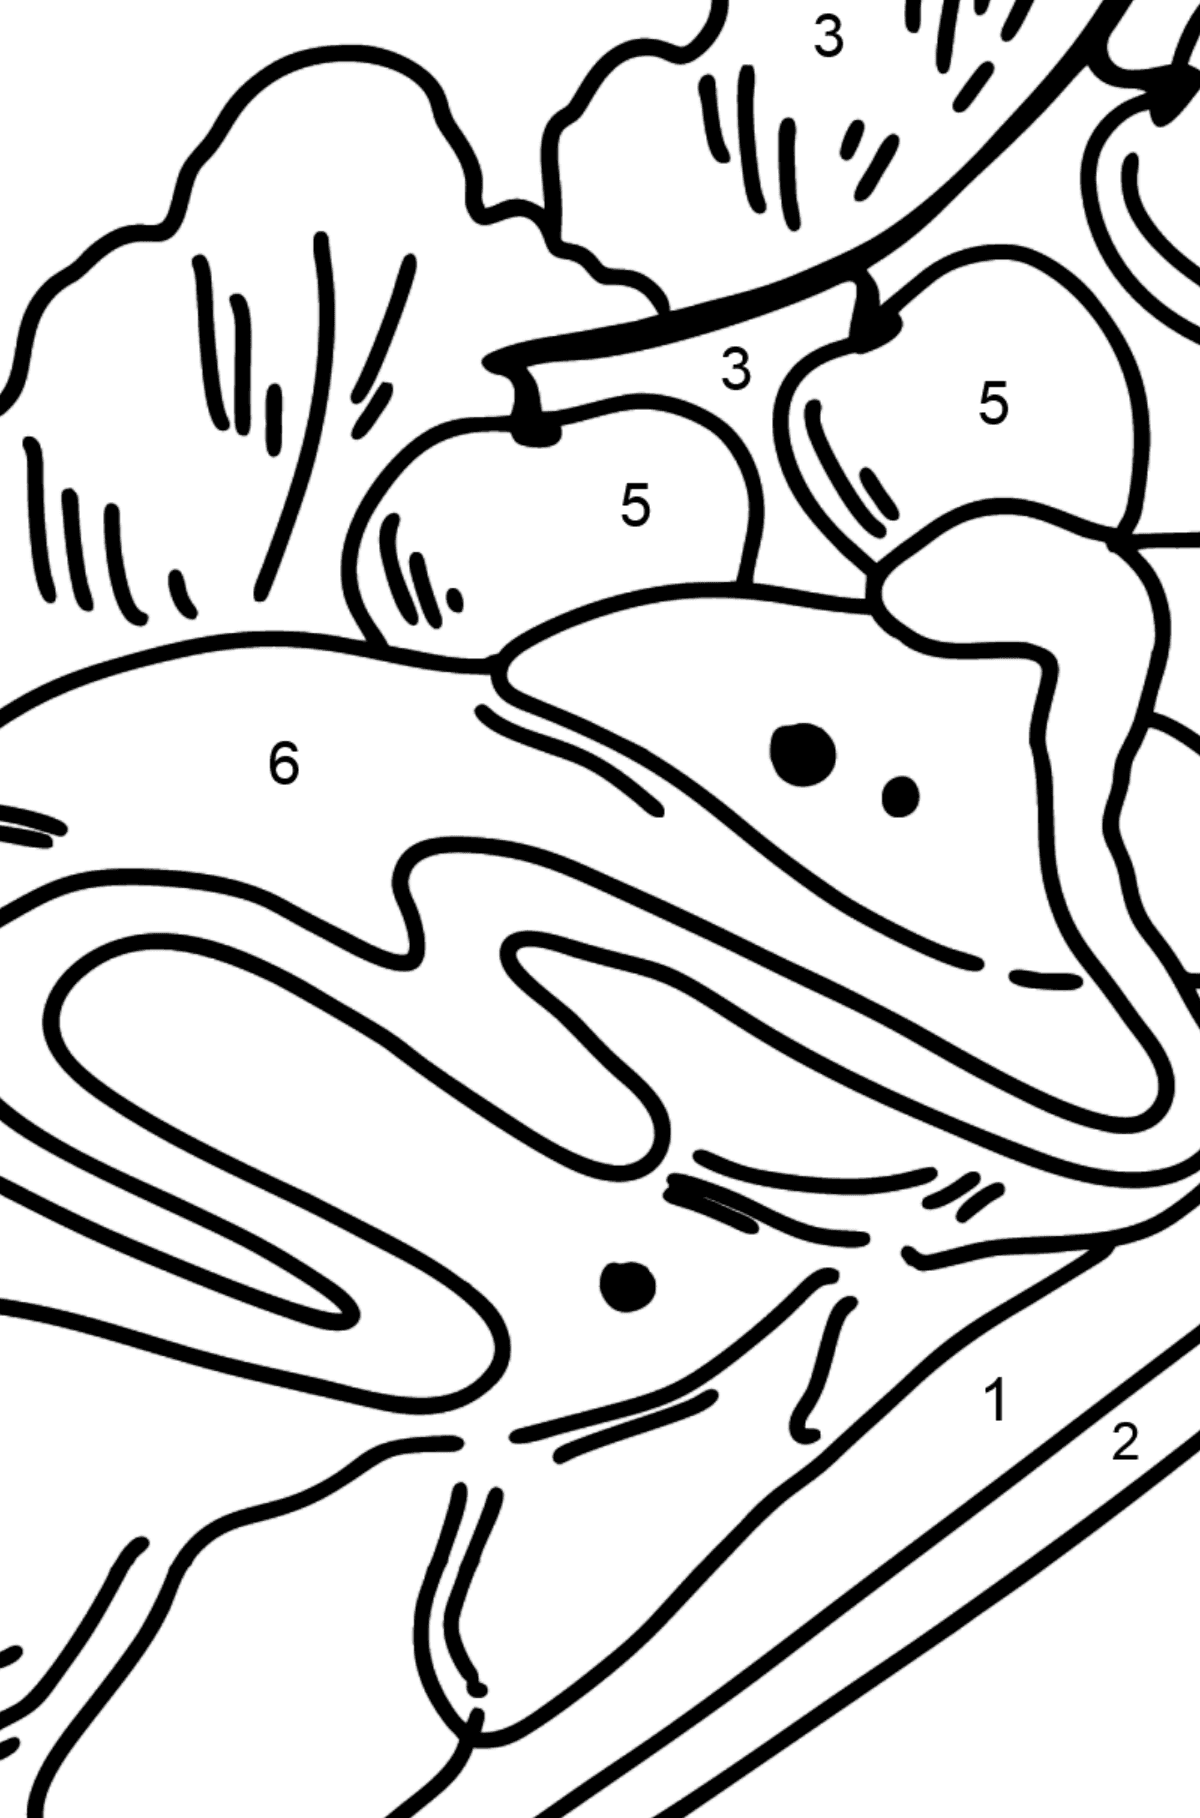 Boyama sayfası ton balıklı salata - Sayılarla Boyama çocuklar için